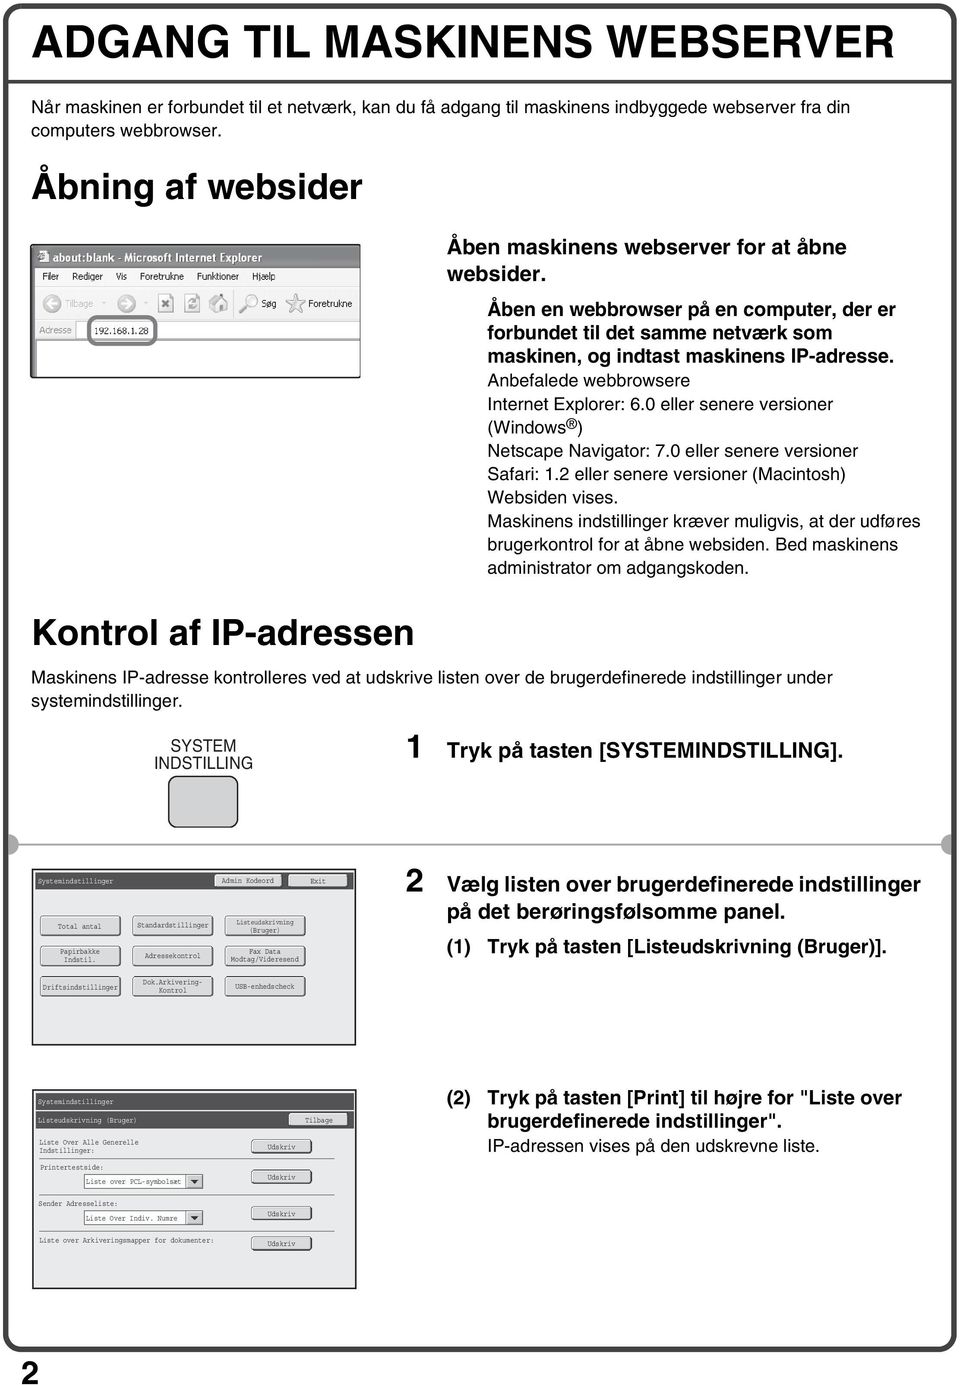 Åben en webbrowser på en computer, der er forbundet til det samme netværk som maskinen, og indtast maskinens IP-adresse. Anbefalede webbrowsere Internet Explorer: 6.